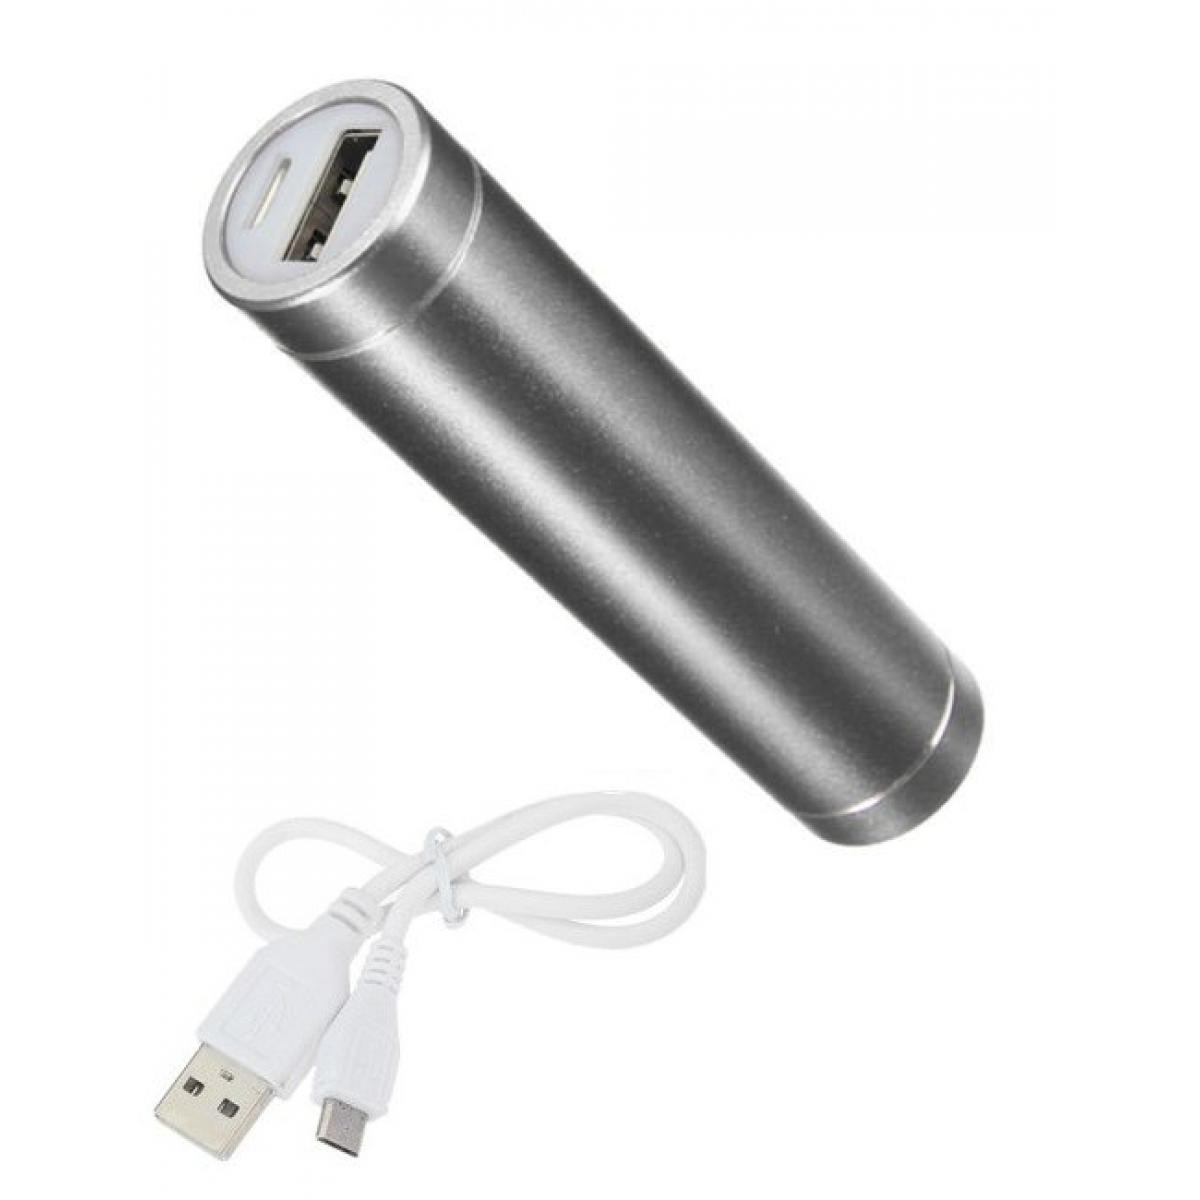 Shot - Batterie Chargeur Externe pour HUAWEI P smart 2019 Power Bank 2600mAh avec Cable USB/Mirco USB Secours Telephon (ARGENT) - Chargeur secteur téléphone